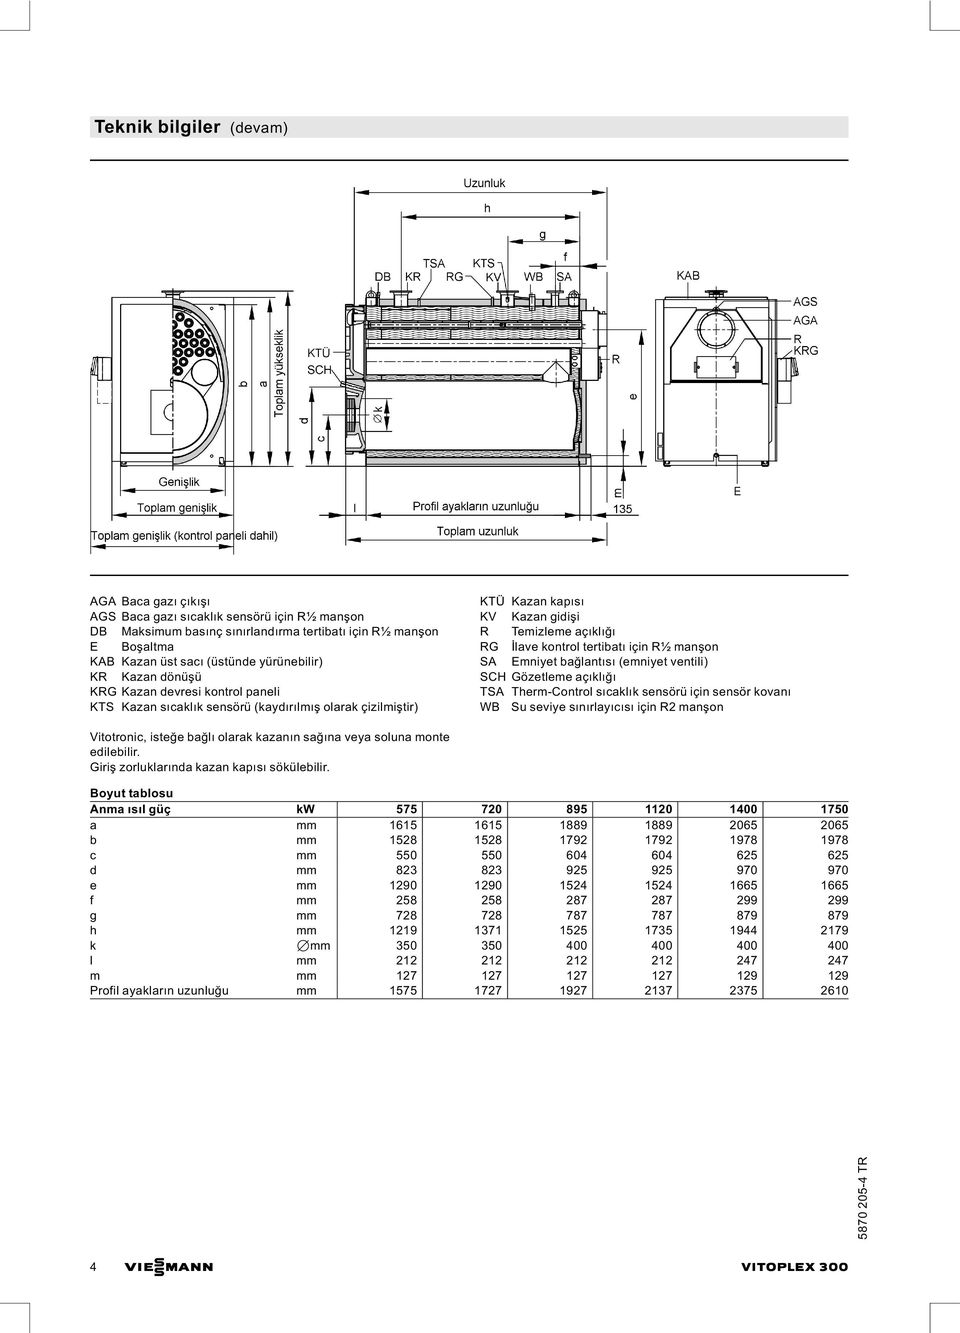 tertibatı için R½ manşon SA Emniyet bağlantısı (emniyet ventili) SCH Gözetleme açıklığı TSA Therm-Control sıcaklık sensörü için sensör kovanı WB Su seviye sınırlayıcısı için R2 manşon Vitotronic,